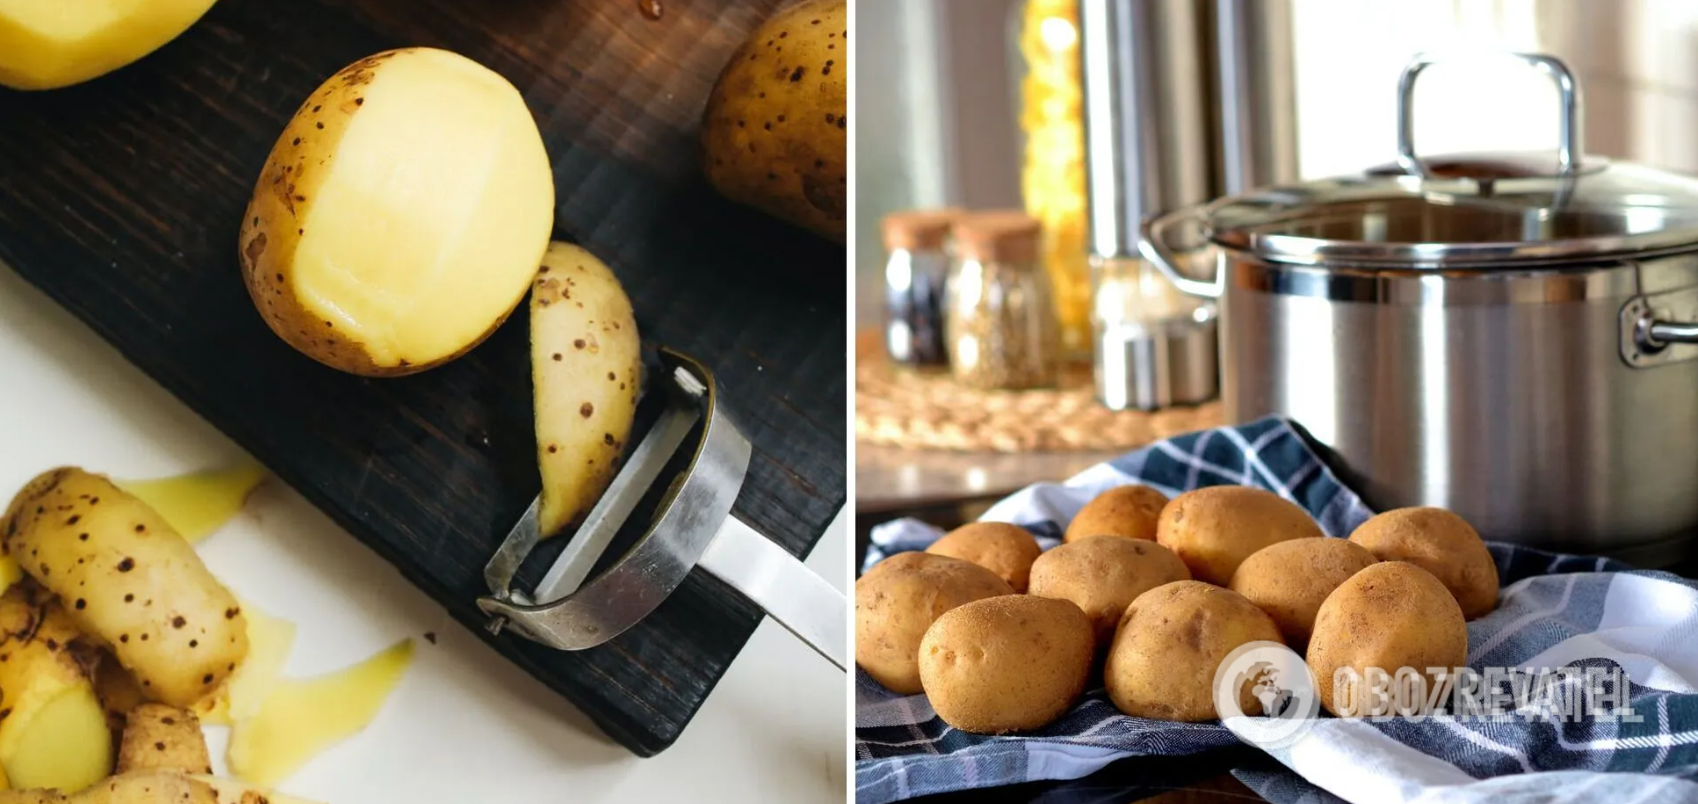 Жареный картофель с орехами: как по-новому приготовить популярное блюдо